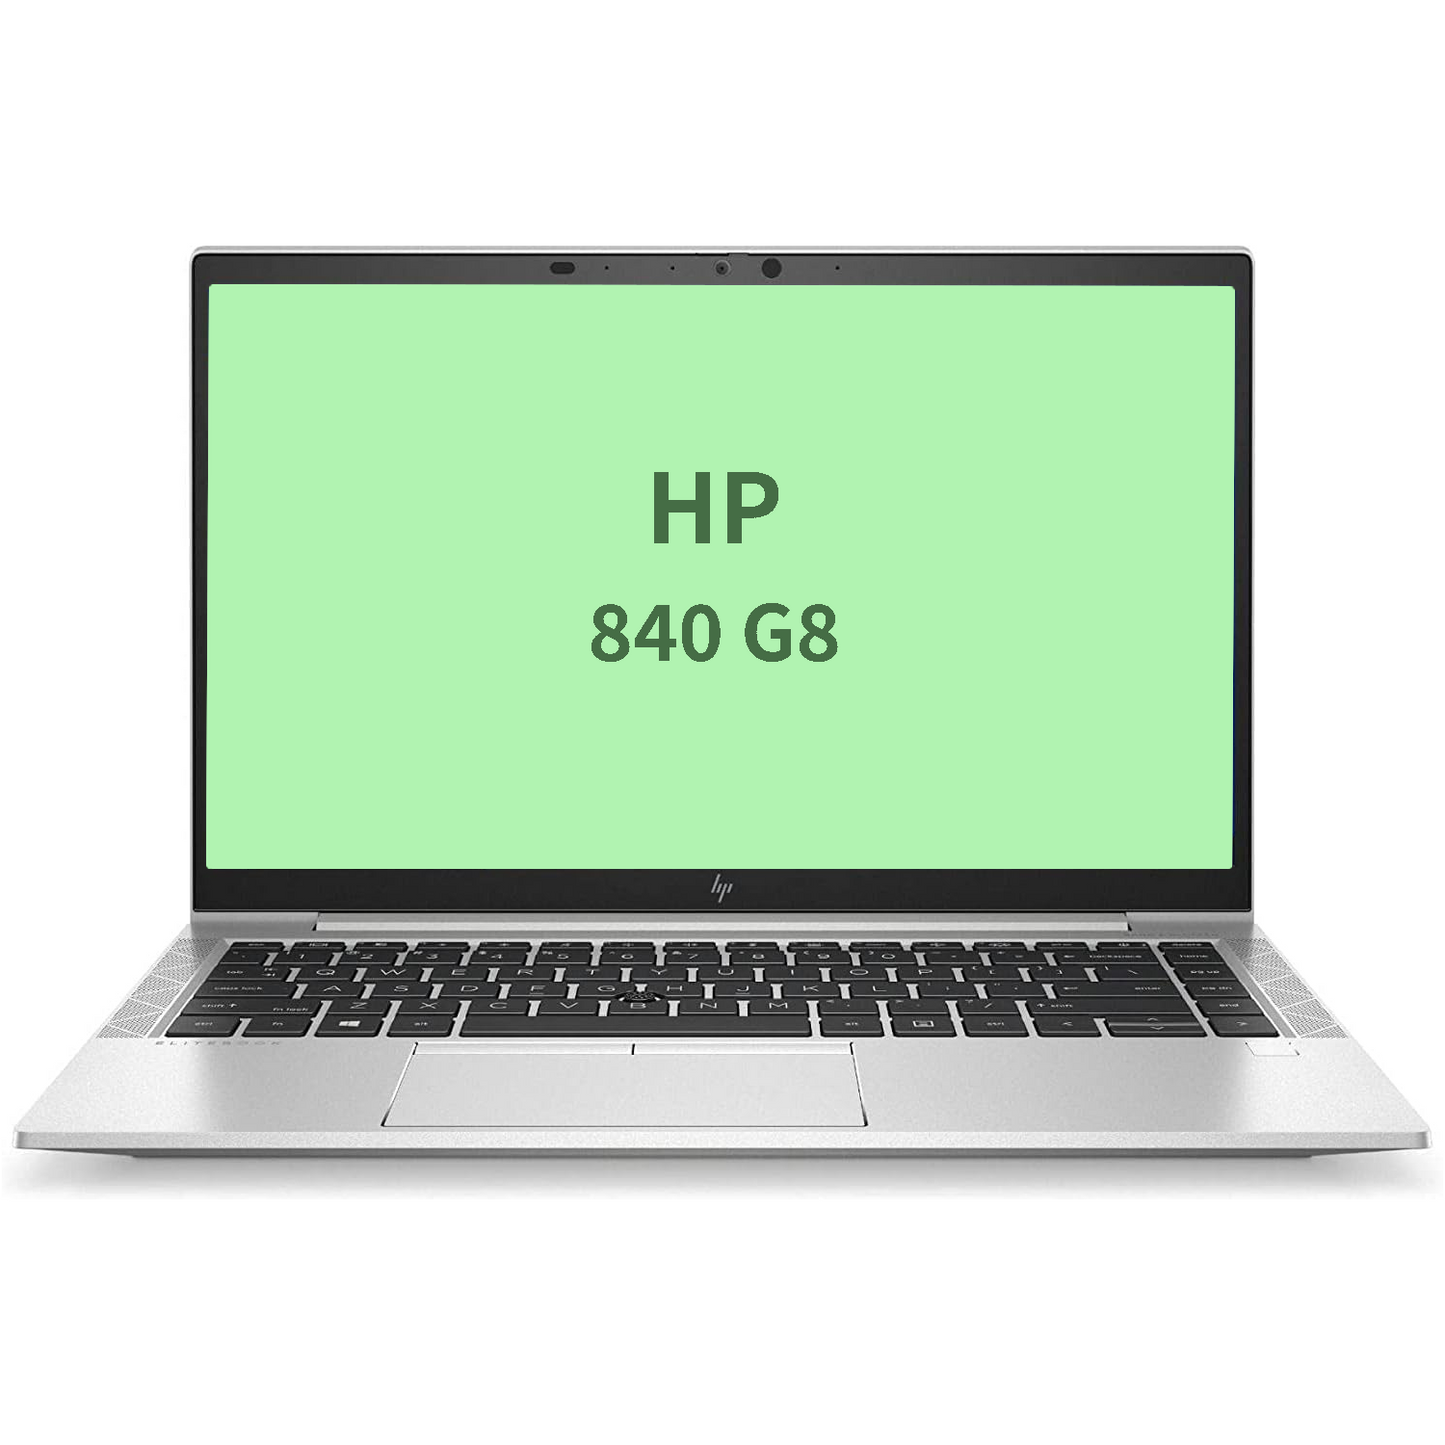 HP Elitebook 840 g8